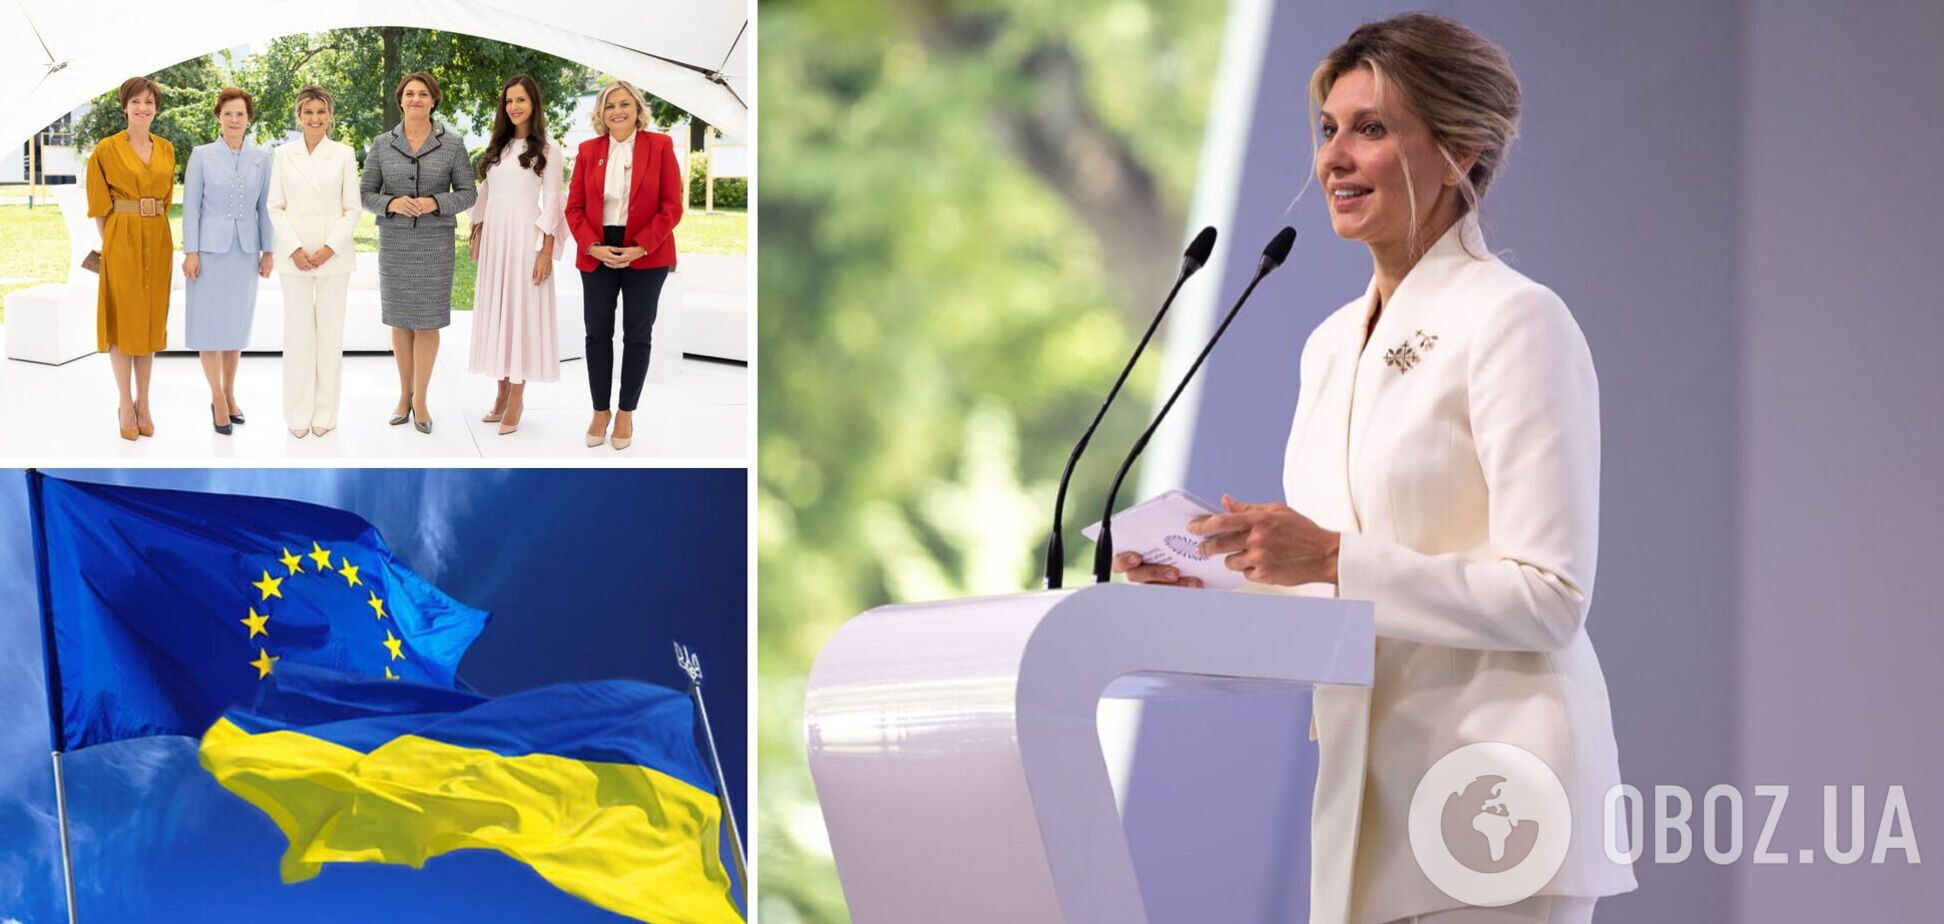 Елена Зеленская назвала первых леди мира, которые поддержали ее сразу после вторжения России в Украину